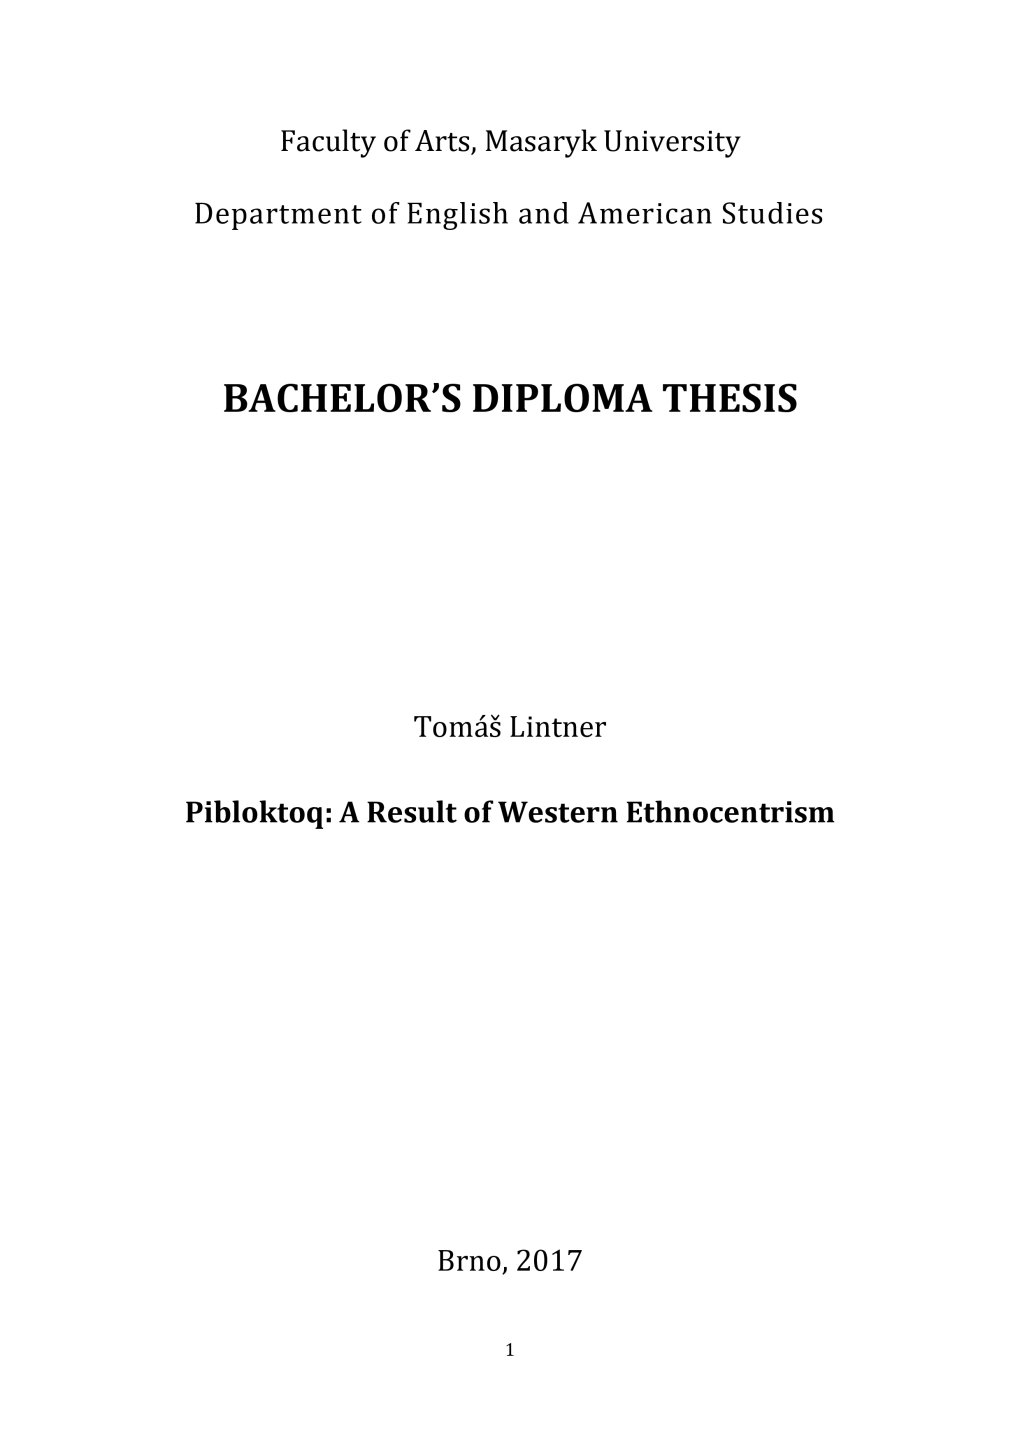 Bachelor's Diploma Thesis